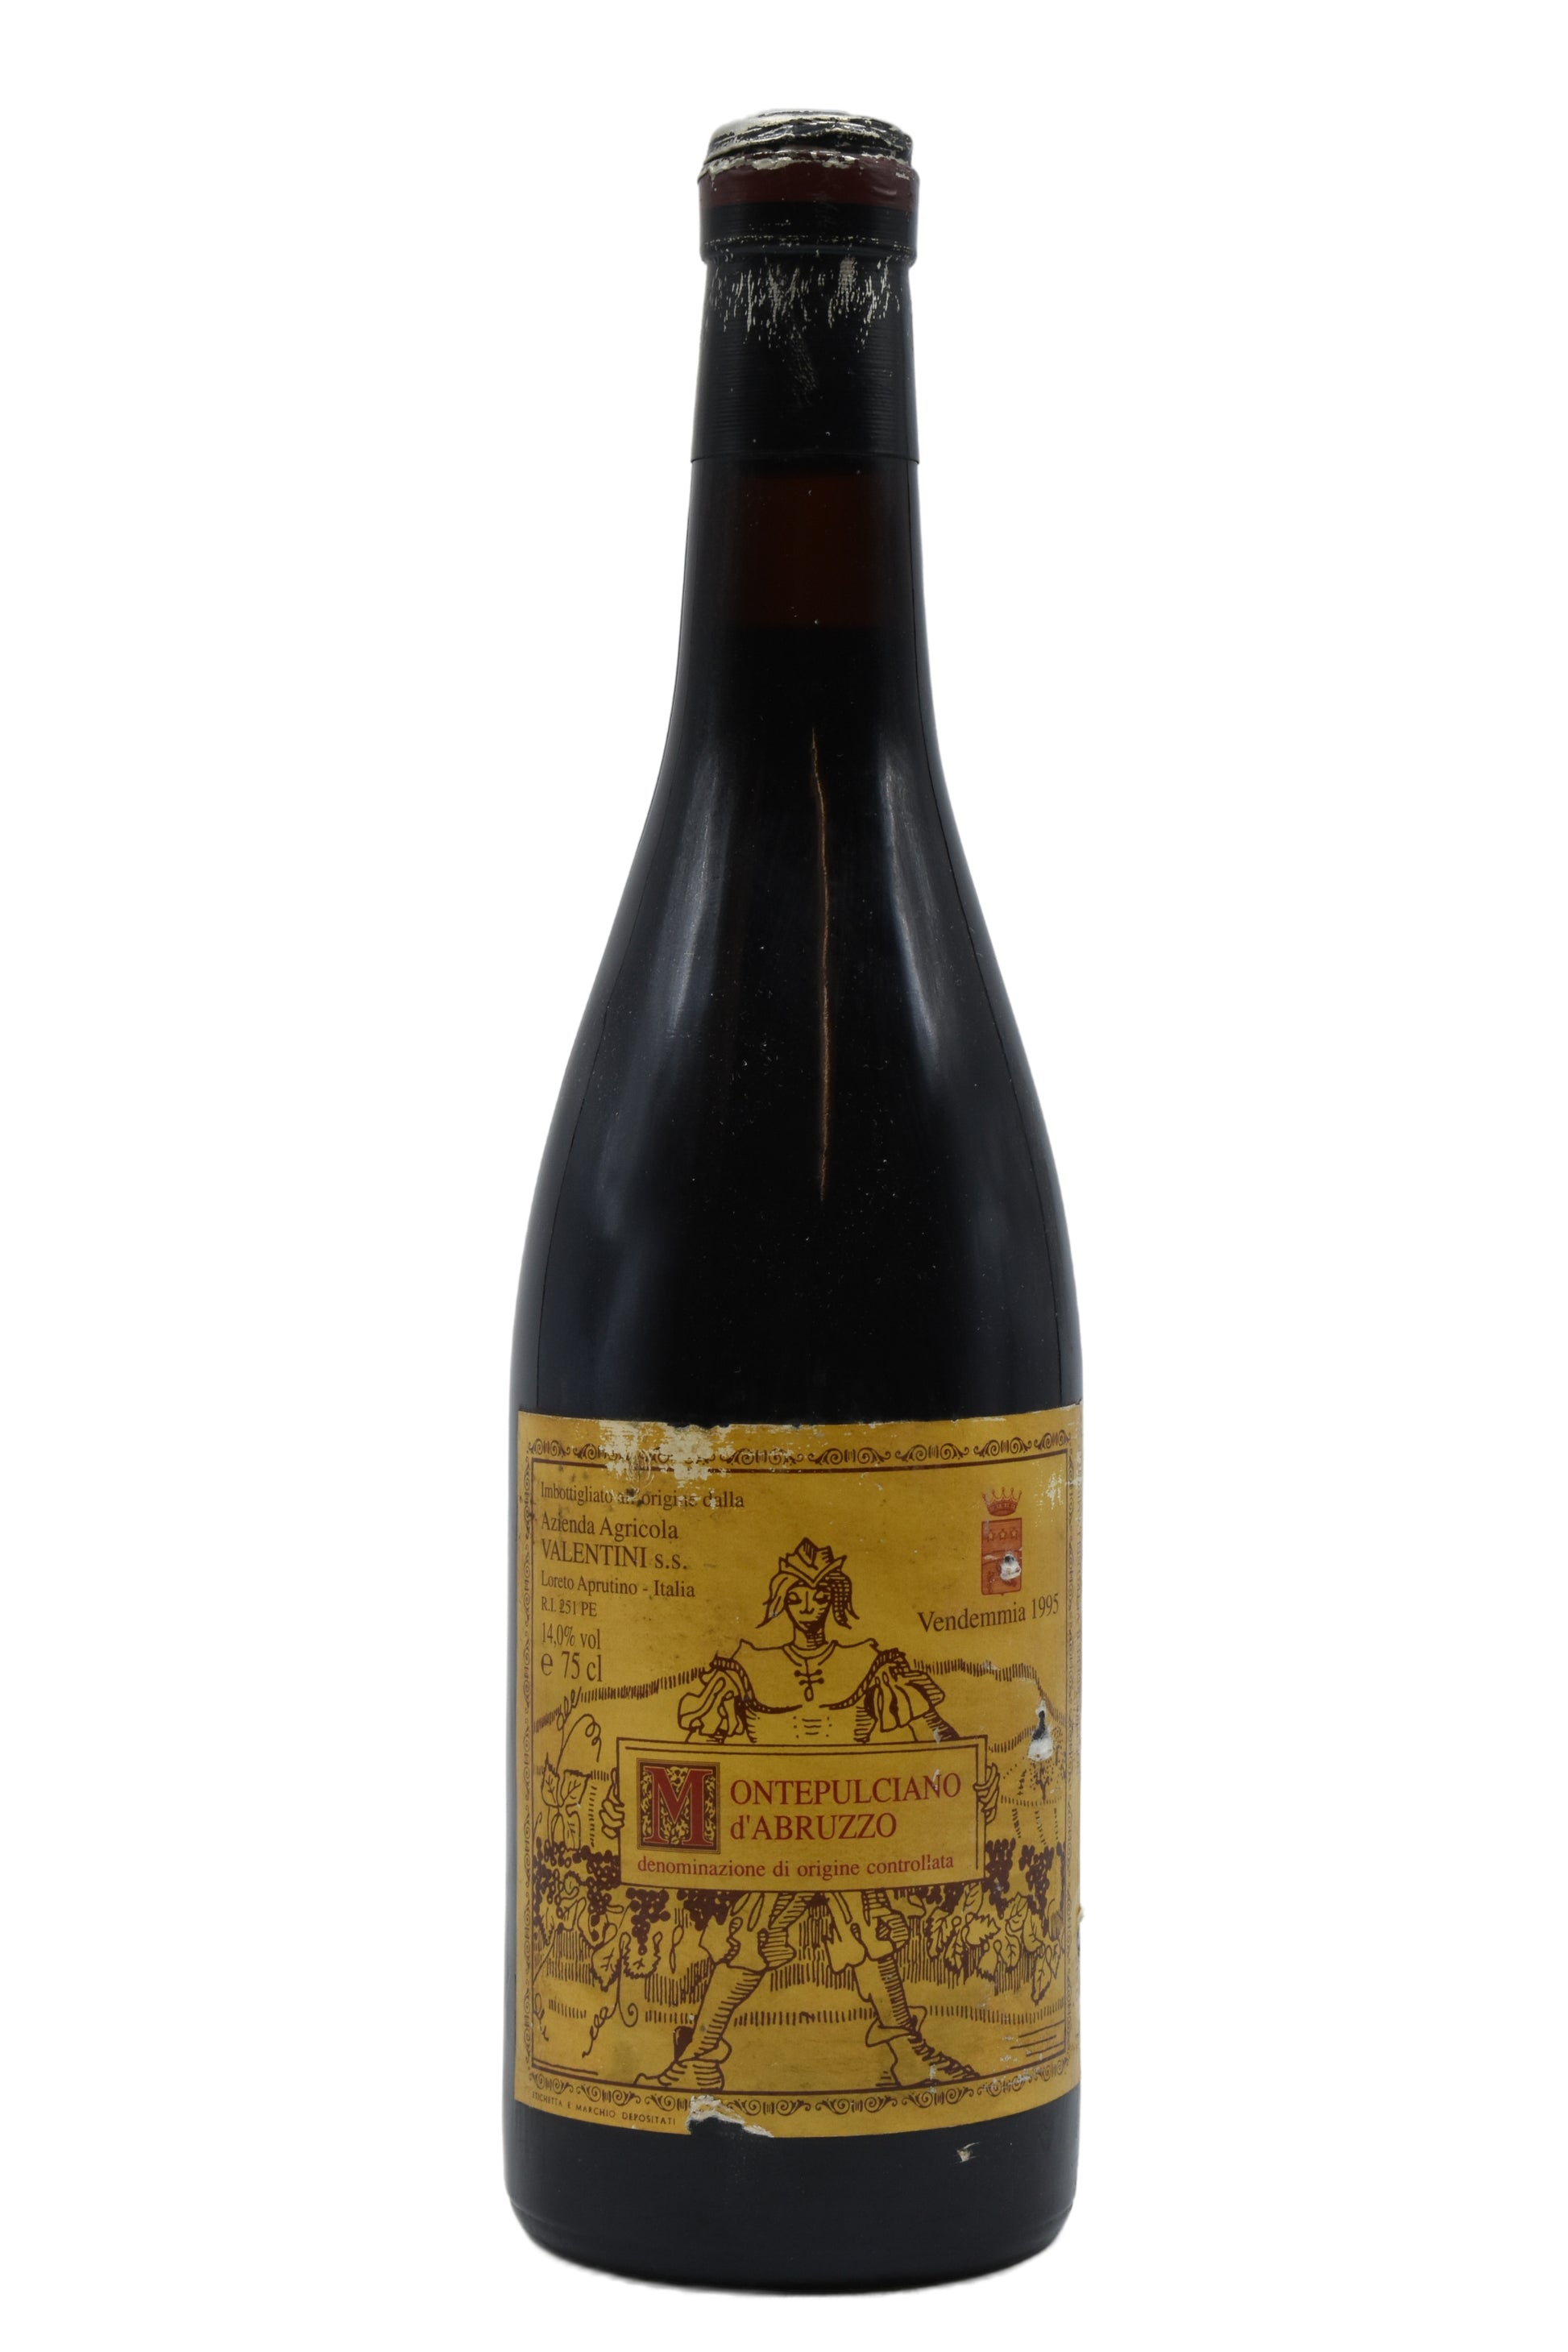 1995 Valentini, Montepulciano d'Abruzzo 750ml - Walker Wine Co.